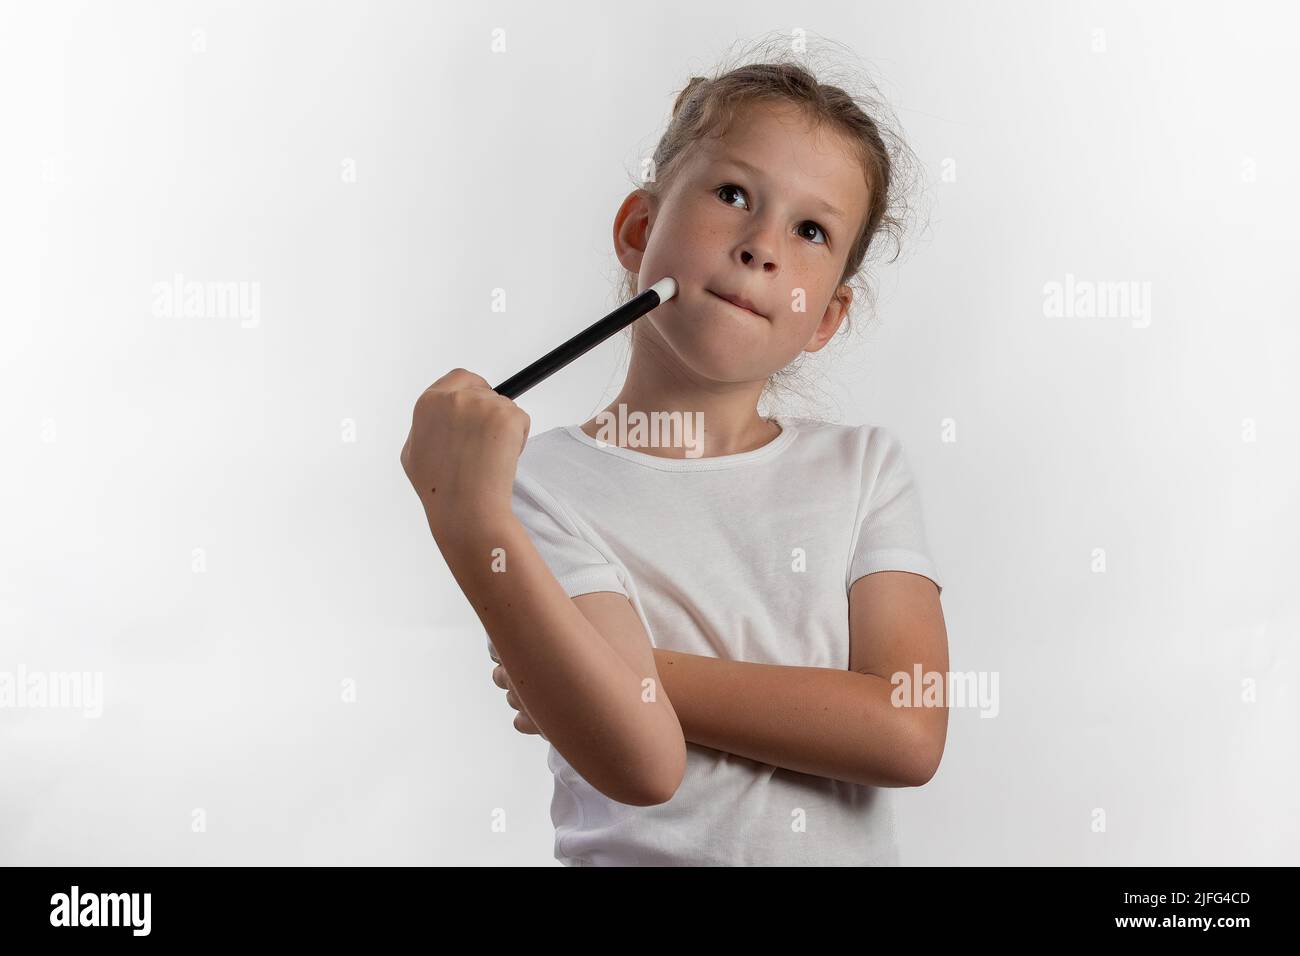 Mädchen Magierin mit einem Zauberstab in den Händen - junge Magierin denkt, was als nächstes zu tun - vor weißem Hintergrund Stockfoto